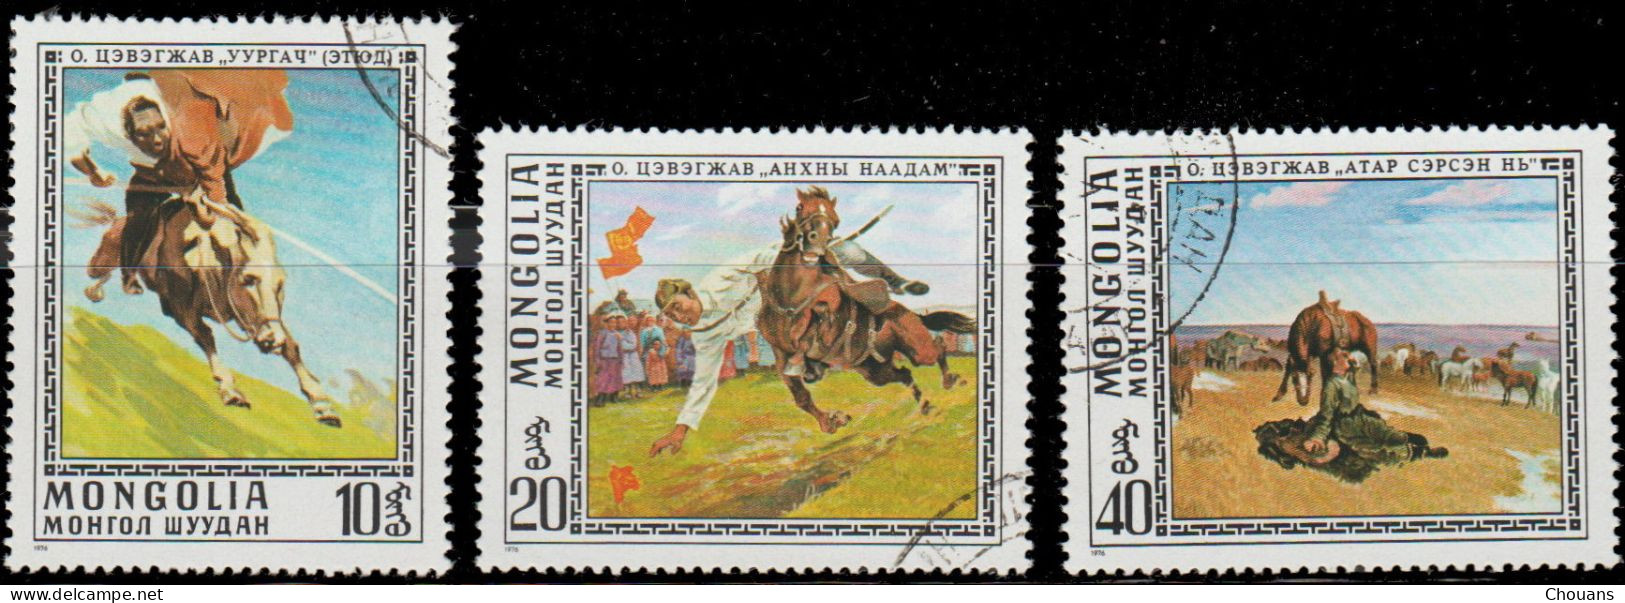 Mongolie 1976. ~ YT 857/60 - Tableaux - Chevaux - Mongolia